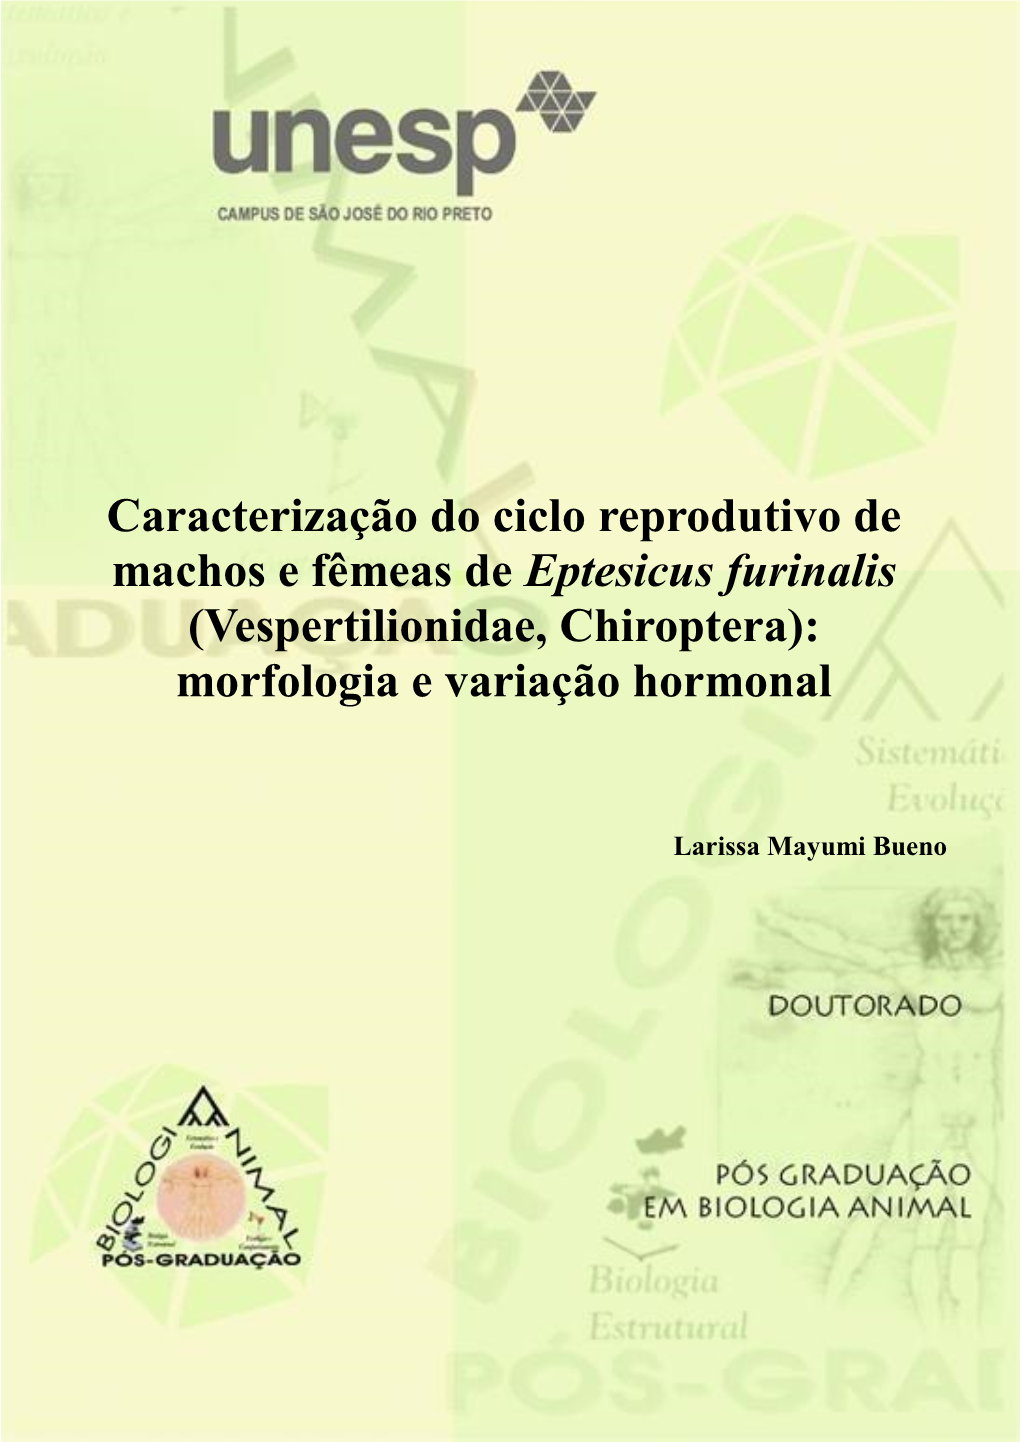 Caracterização Do Ciclo Reprodutivo De Machos E Fêmeas De Eptesicus Furinalis (Vespertilionidae, Chiroptera)